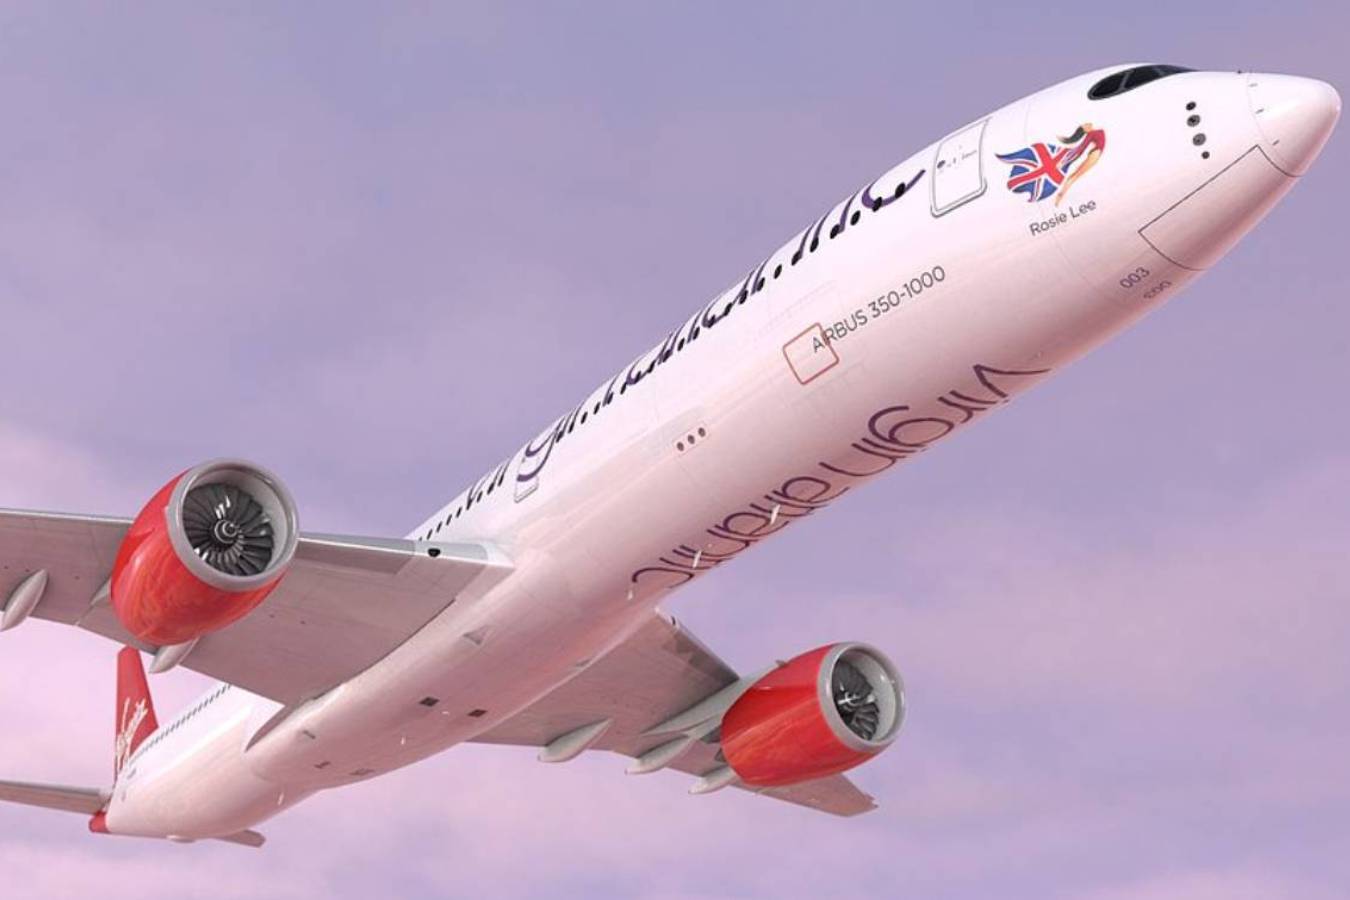 Авиакомпания Virgin Atlantic представила новый салон для лайнера Airbus A350